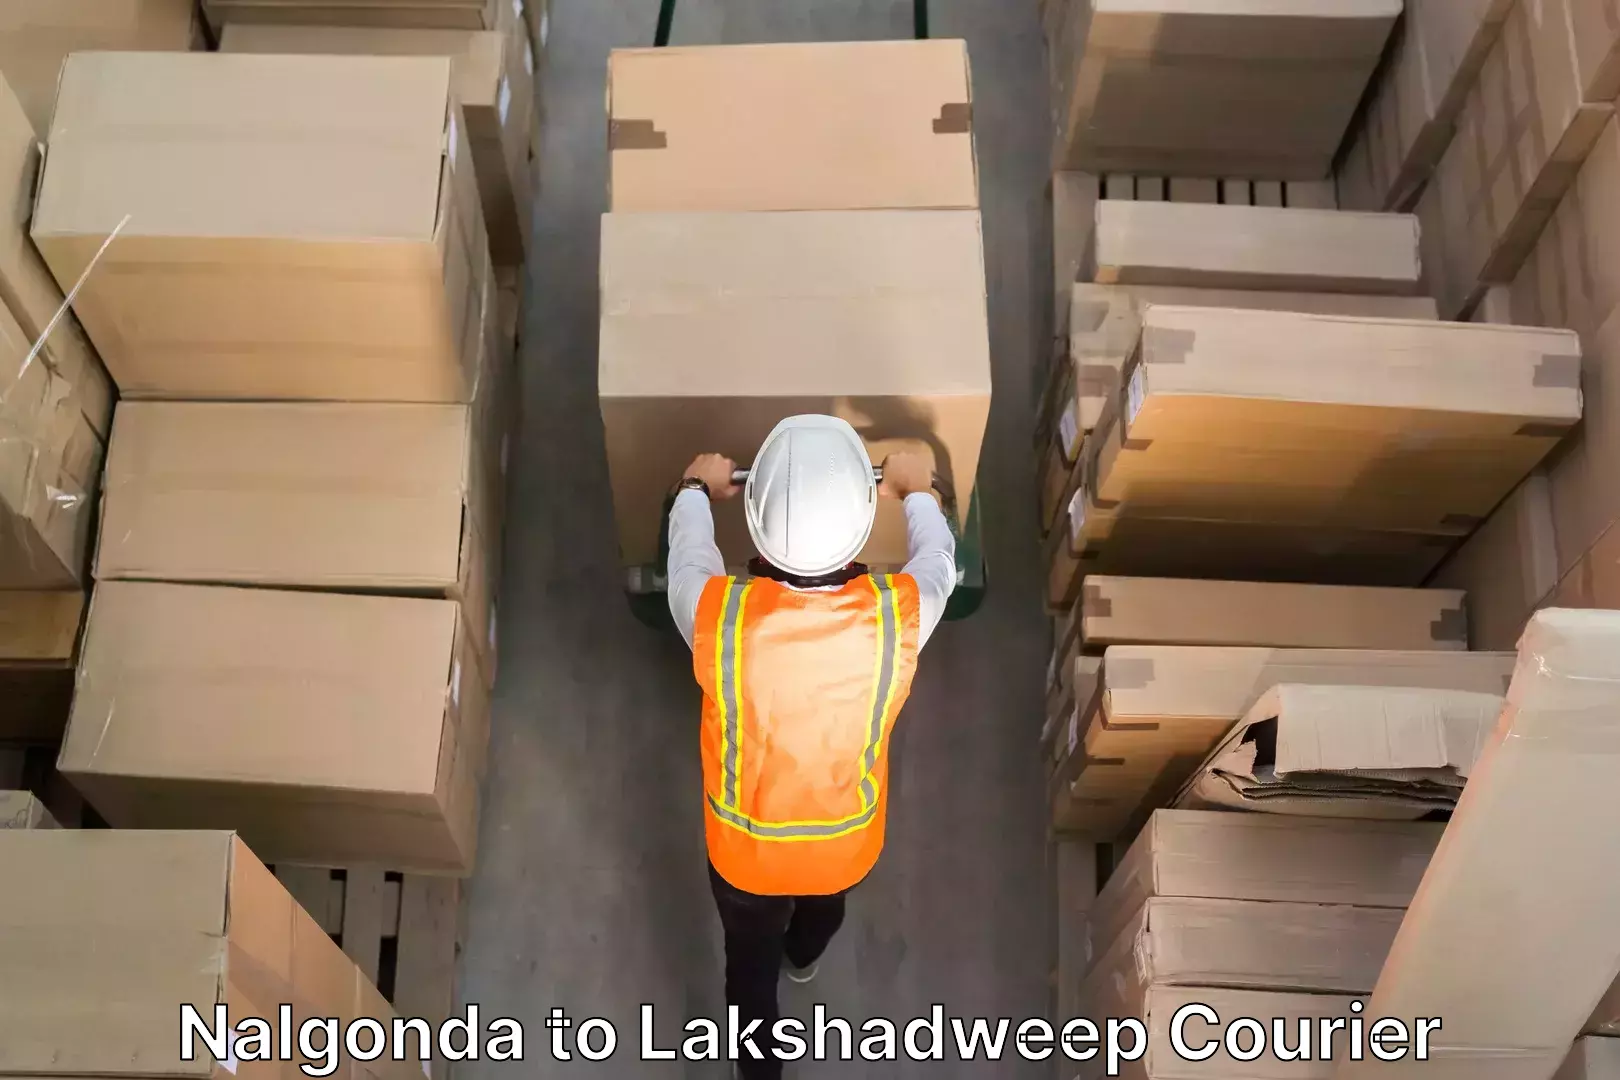 Furniture handling services Nalgonda to Lakshadweep